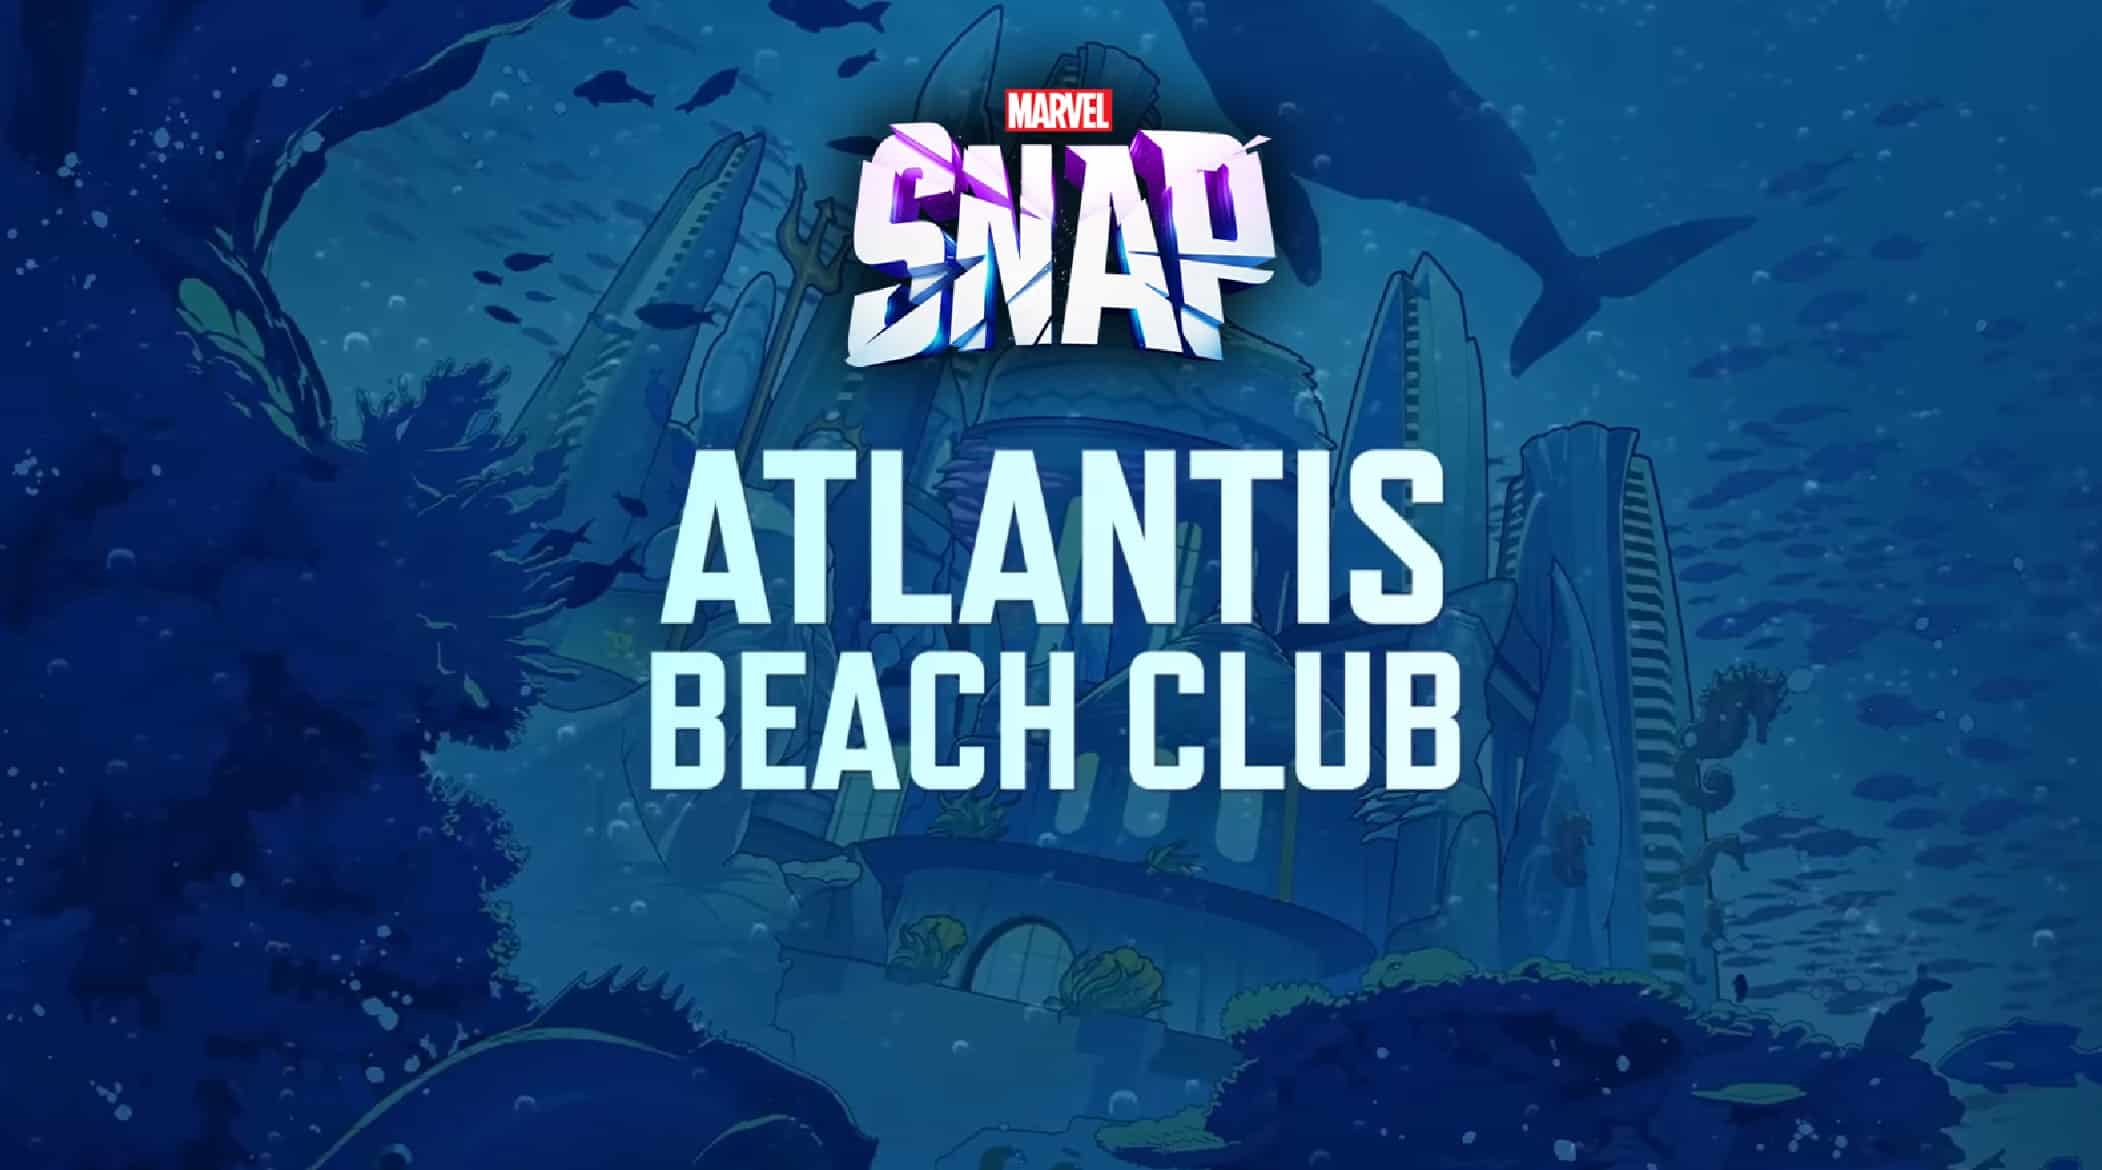 Kunstwerk von Marvel Snap Atlantis Beach Club